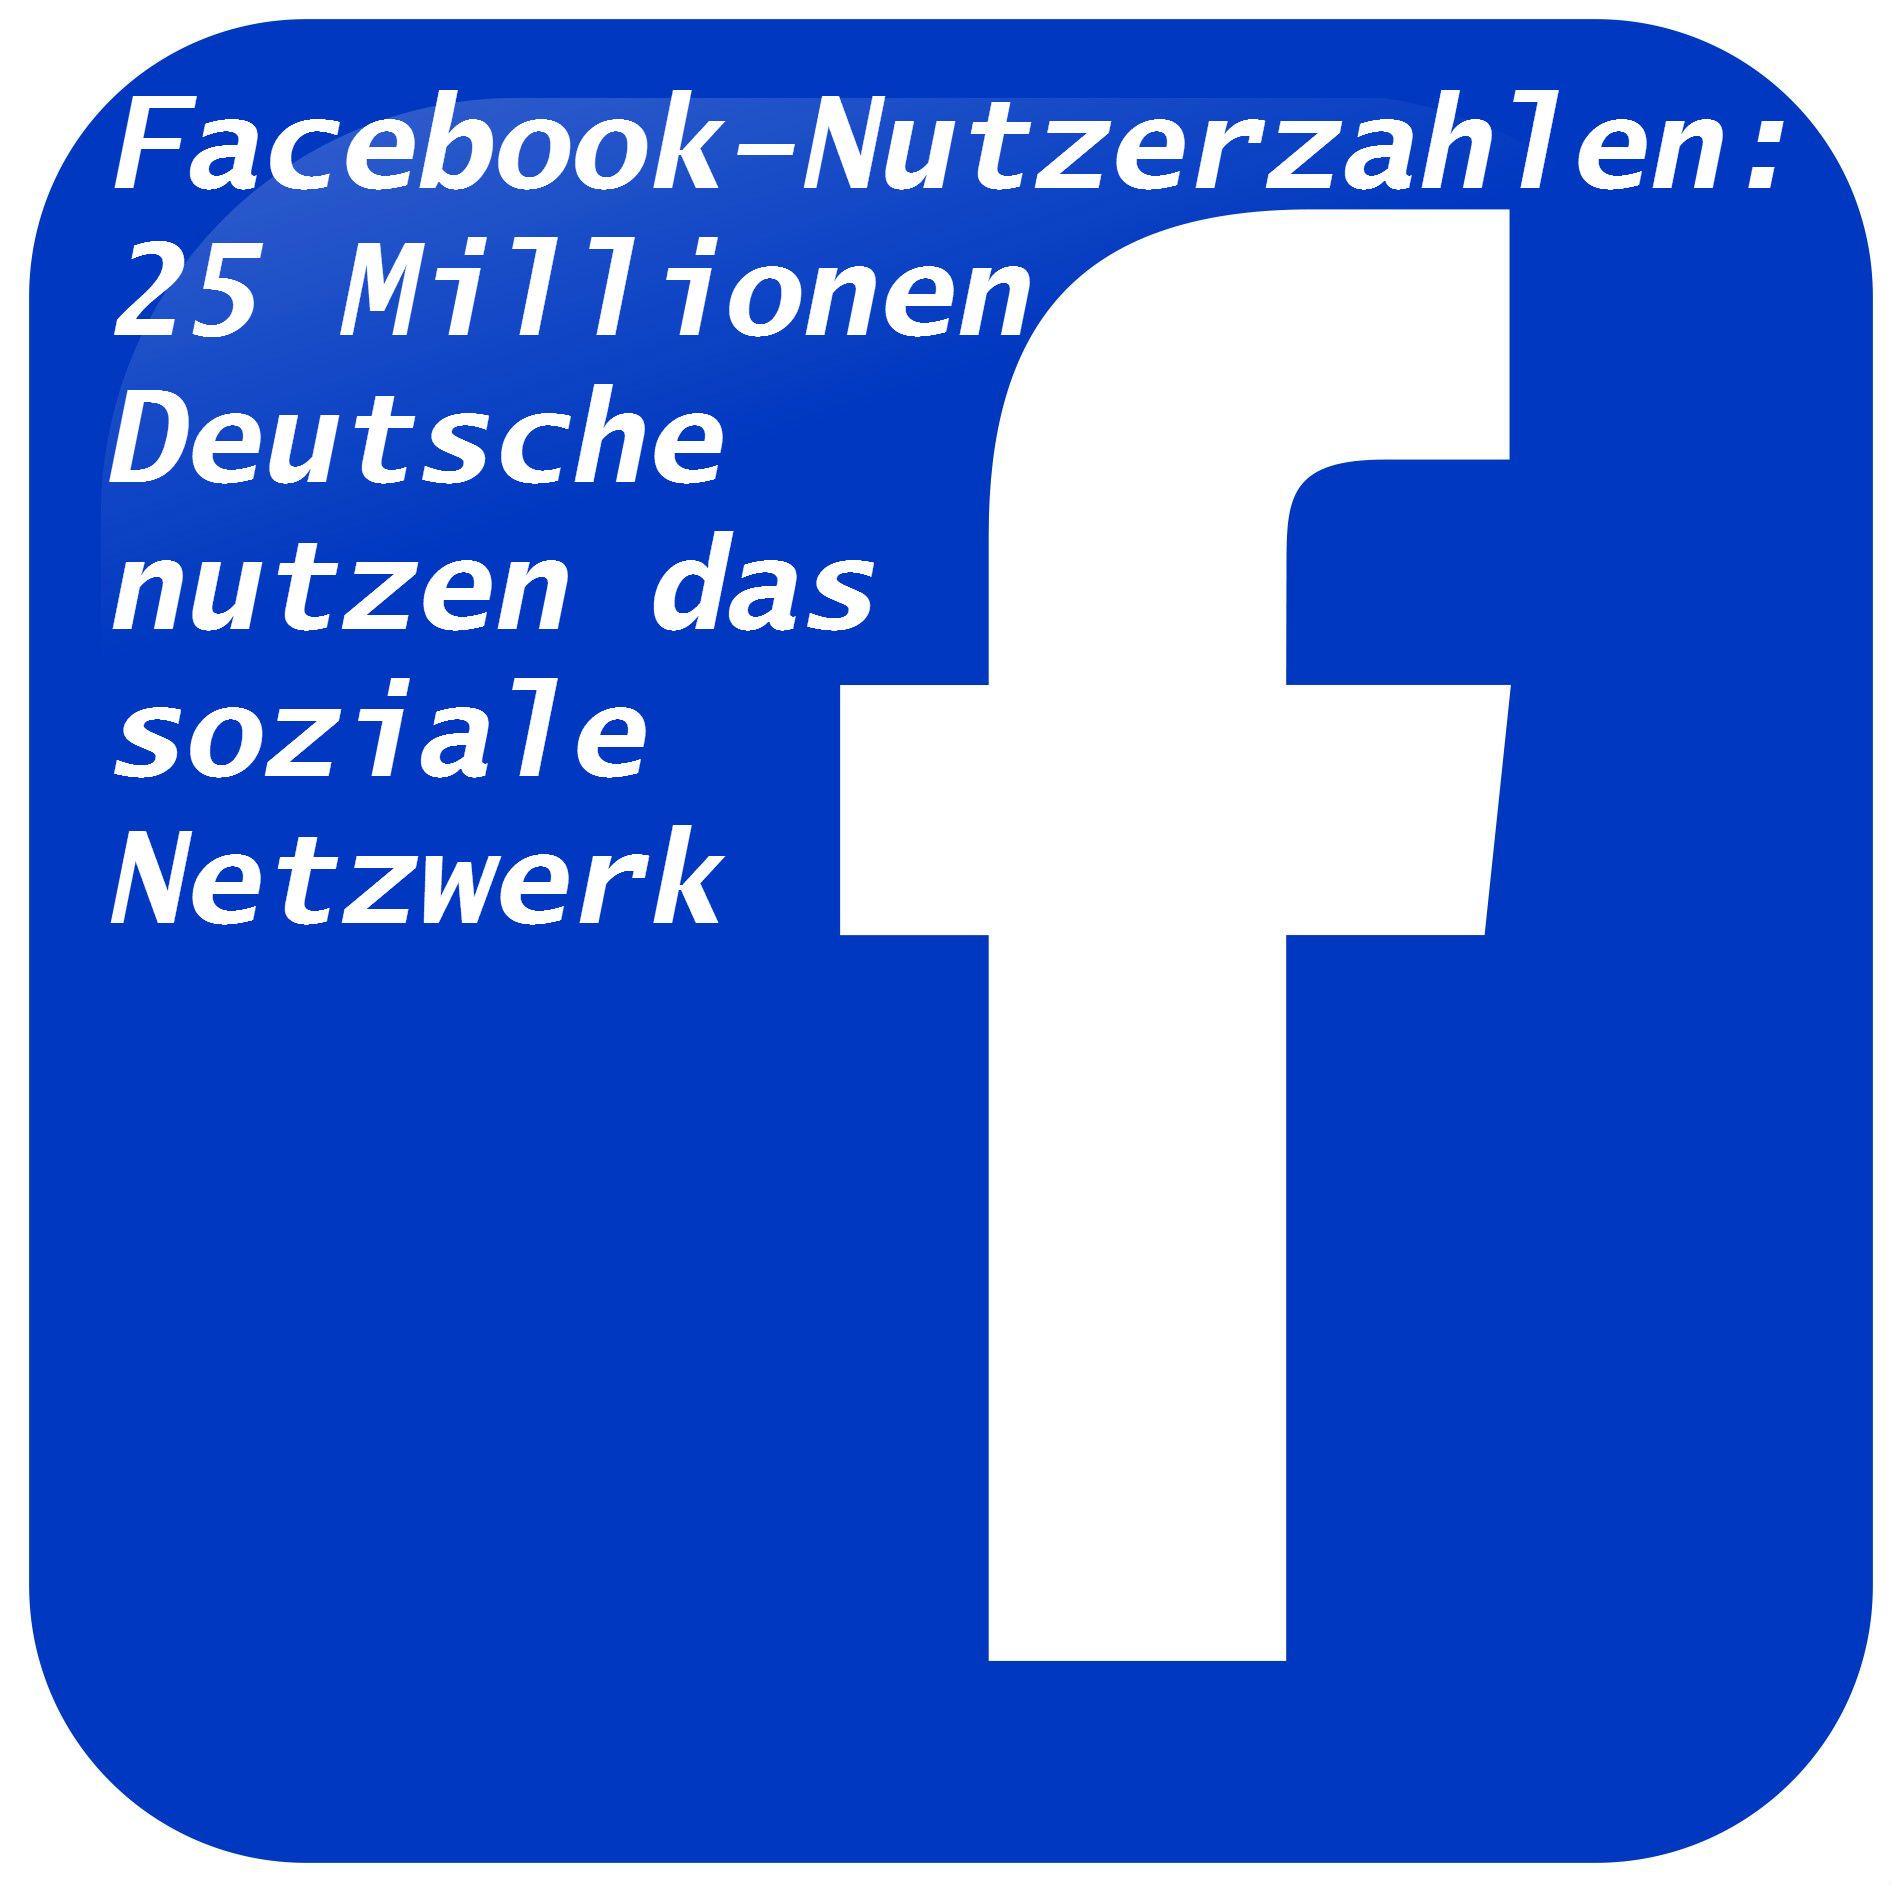 Facebook veröffentlicht Nutzerzahlen: 25 Millionen Deutsche sind auf dem Netzwerk aktiv